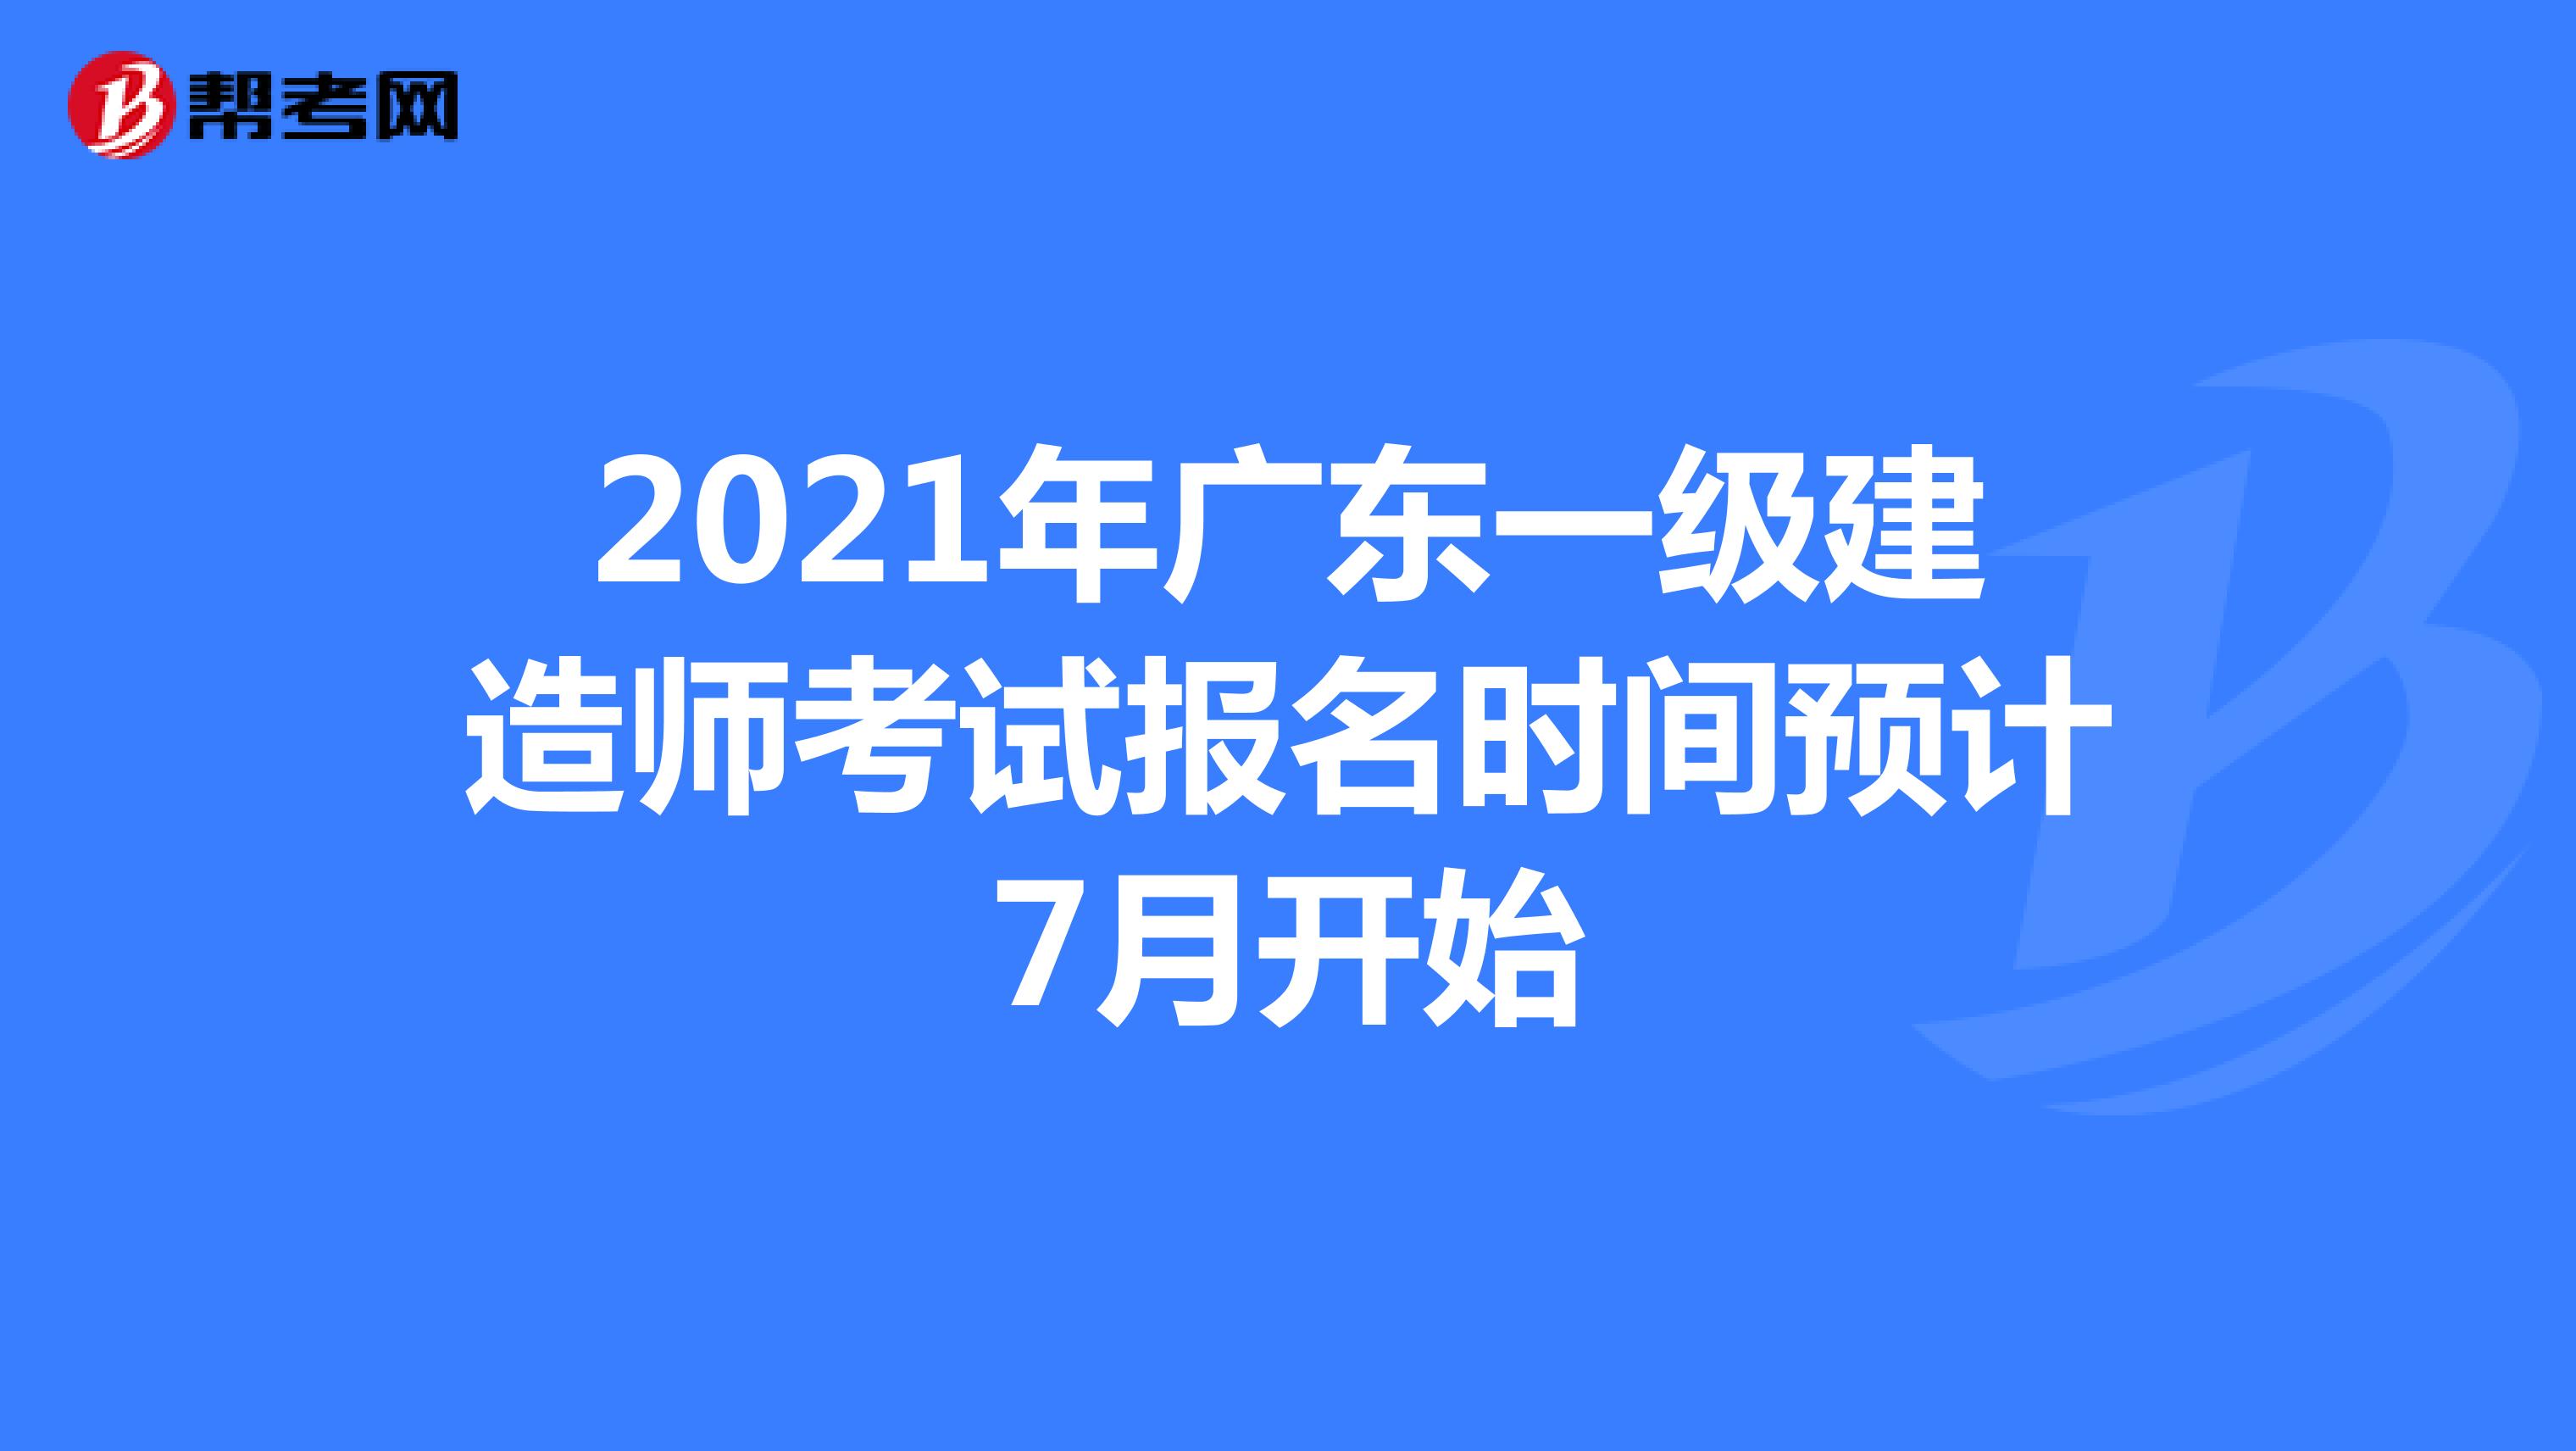 2021年广东一级建造师考试报名时间预计7月开始